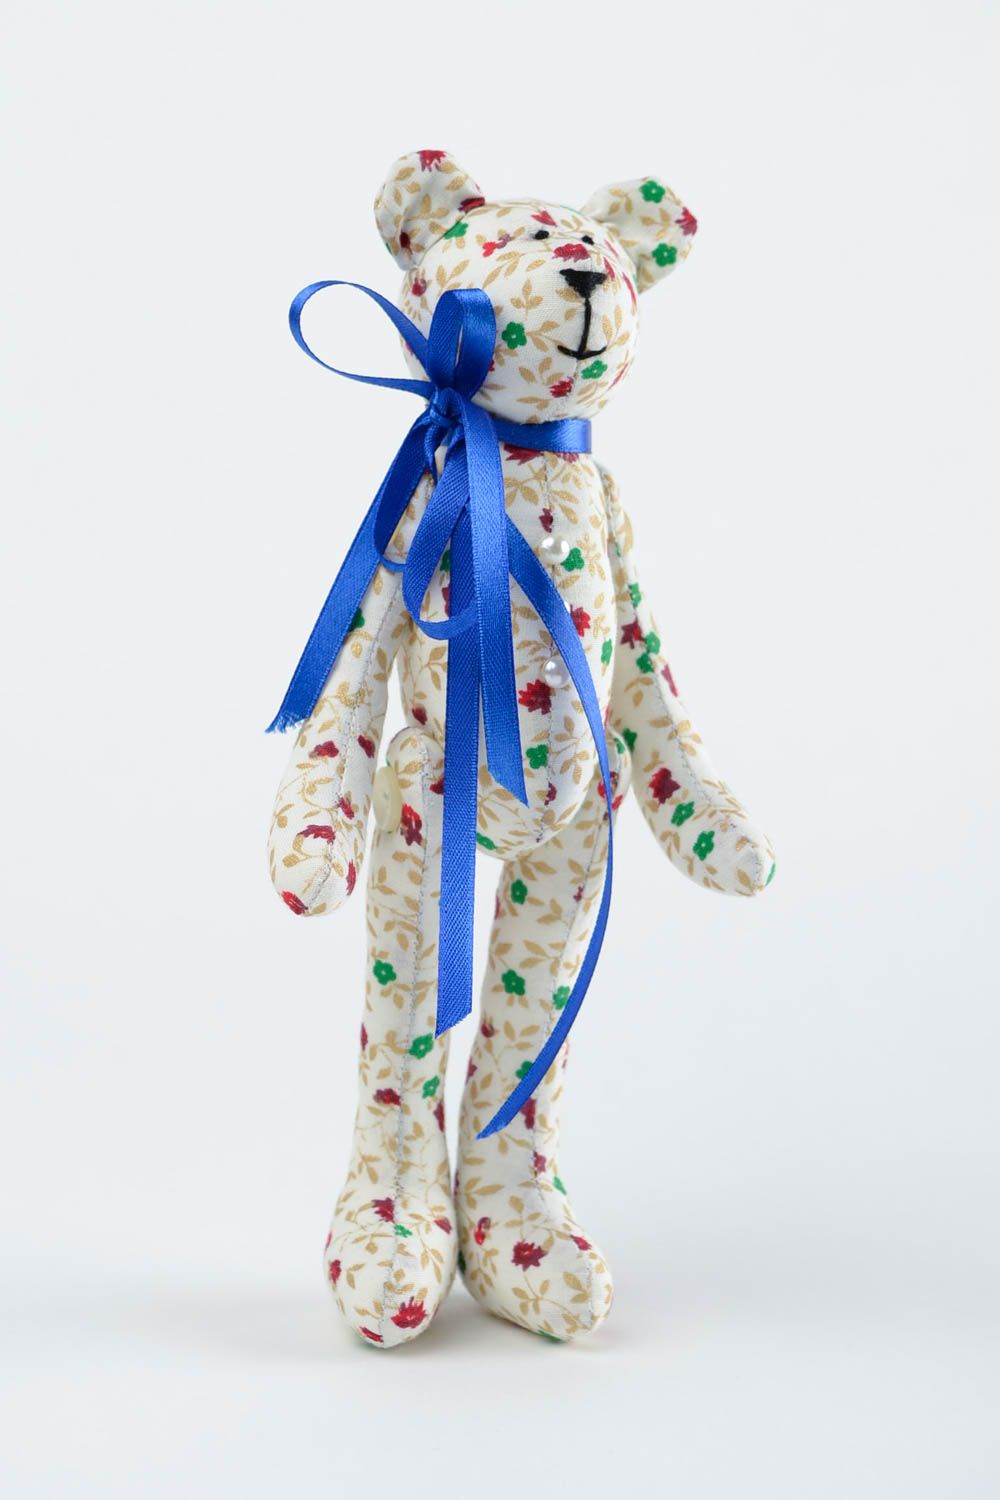 Jouet Ours en tissu de coton fait main avec noeud bleu Cadeau pour enfant photo 4